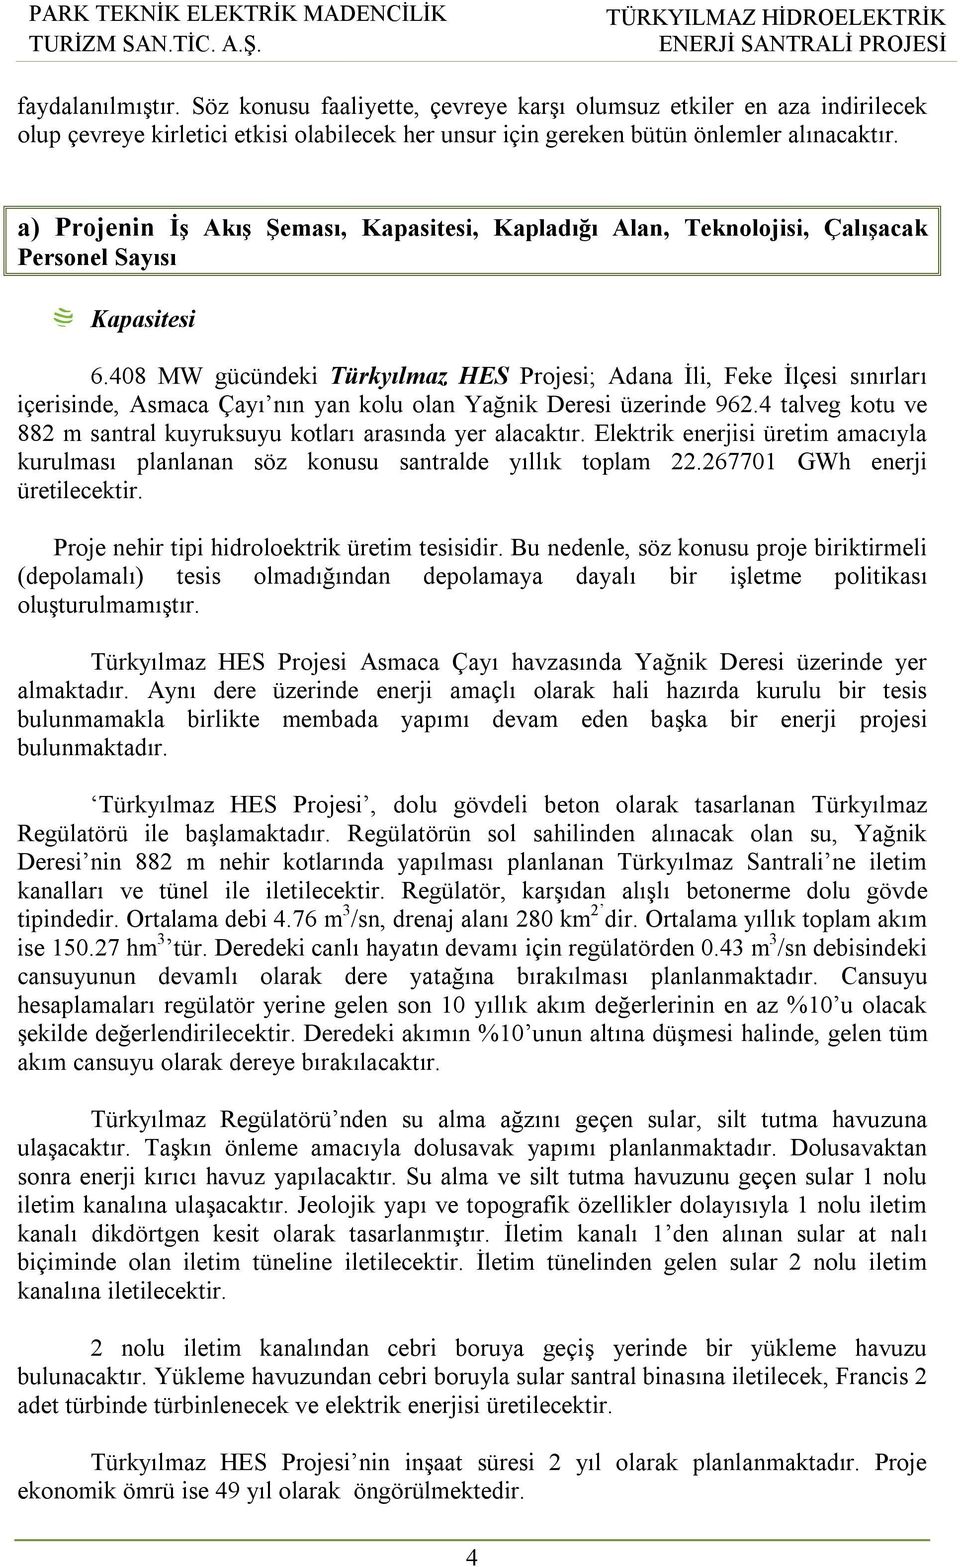 408 MW gücündeki Türkyılmaz HES Projesi; Adana İli, Feke İlçesi sınırları içerisinde, Asmaca Çayı nın yan kolu olan Yağnik Deresi üzerinde 962.